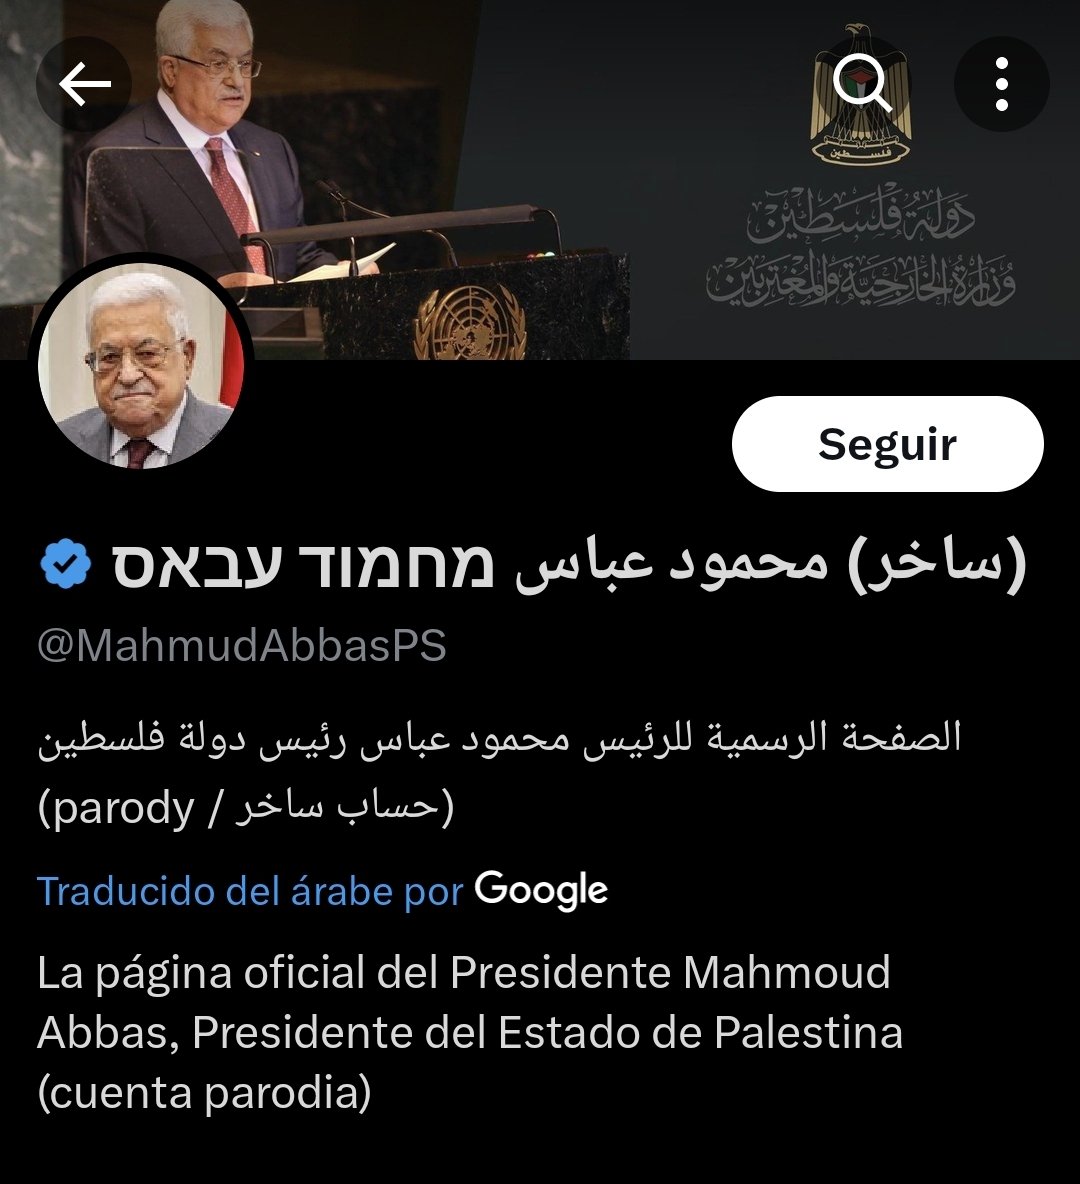 Petro acaba de retuitear las felicitaciones de una CUENTA PARODIA del líder palestino Mahmud Abás.

Está tan metido en la película de 'líder mundial' que no vio que el nombre está en hebreo, ni que el mensaje es una sátira, ni que le dice dizque 'VIVA SHAKIRA'. 

¡Qué vergüenza!